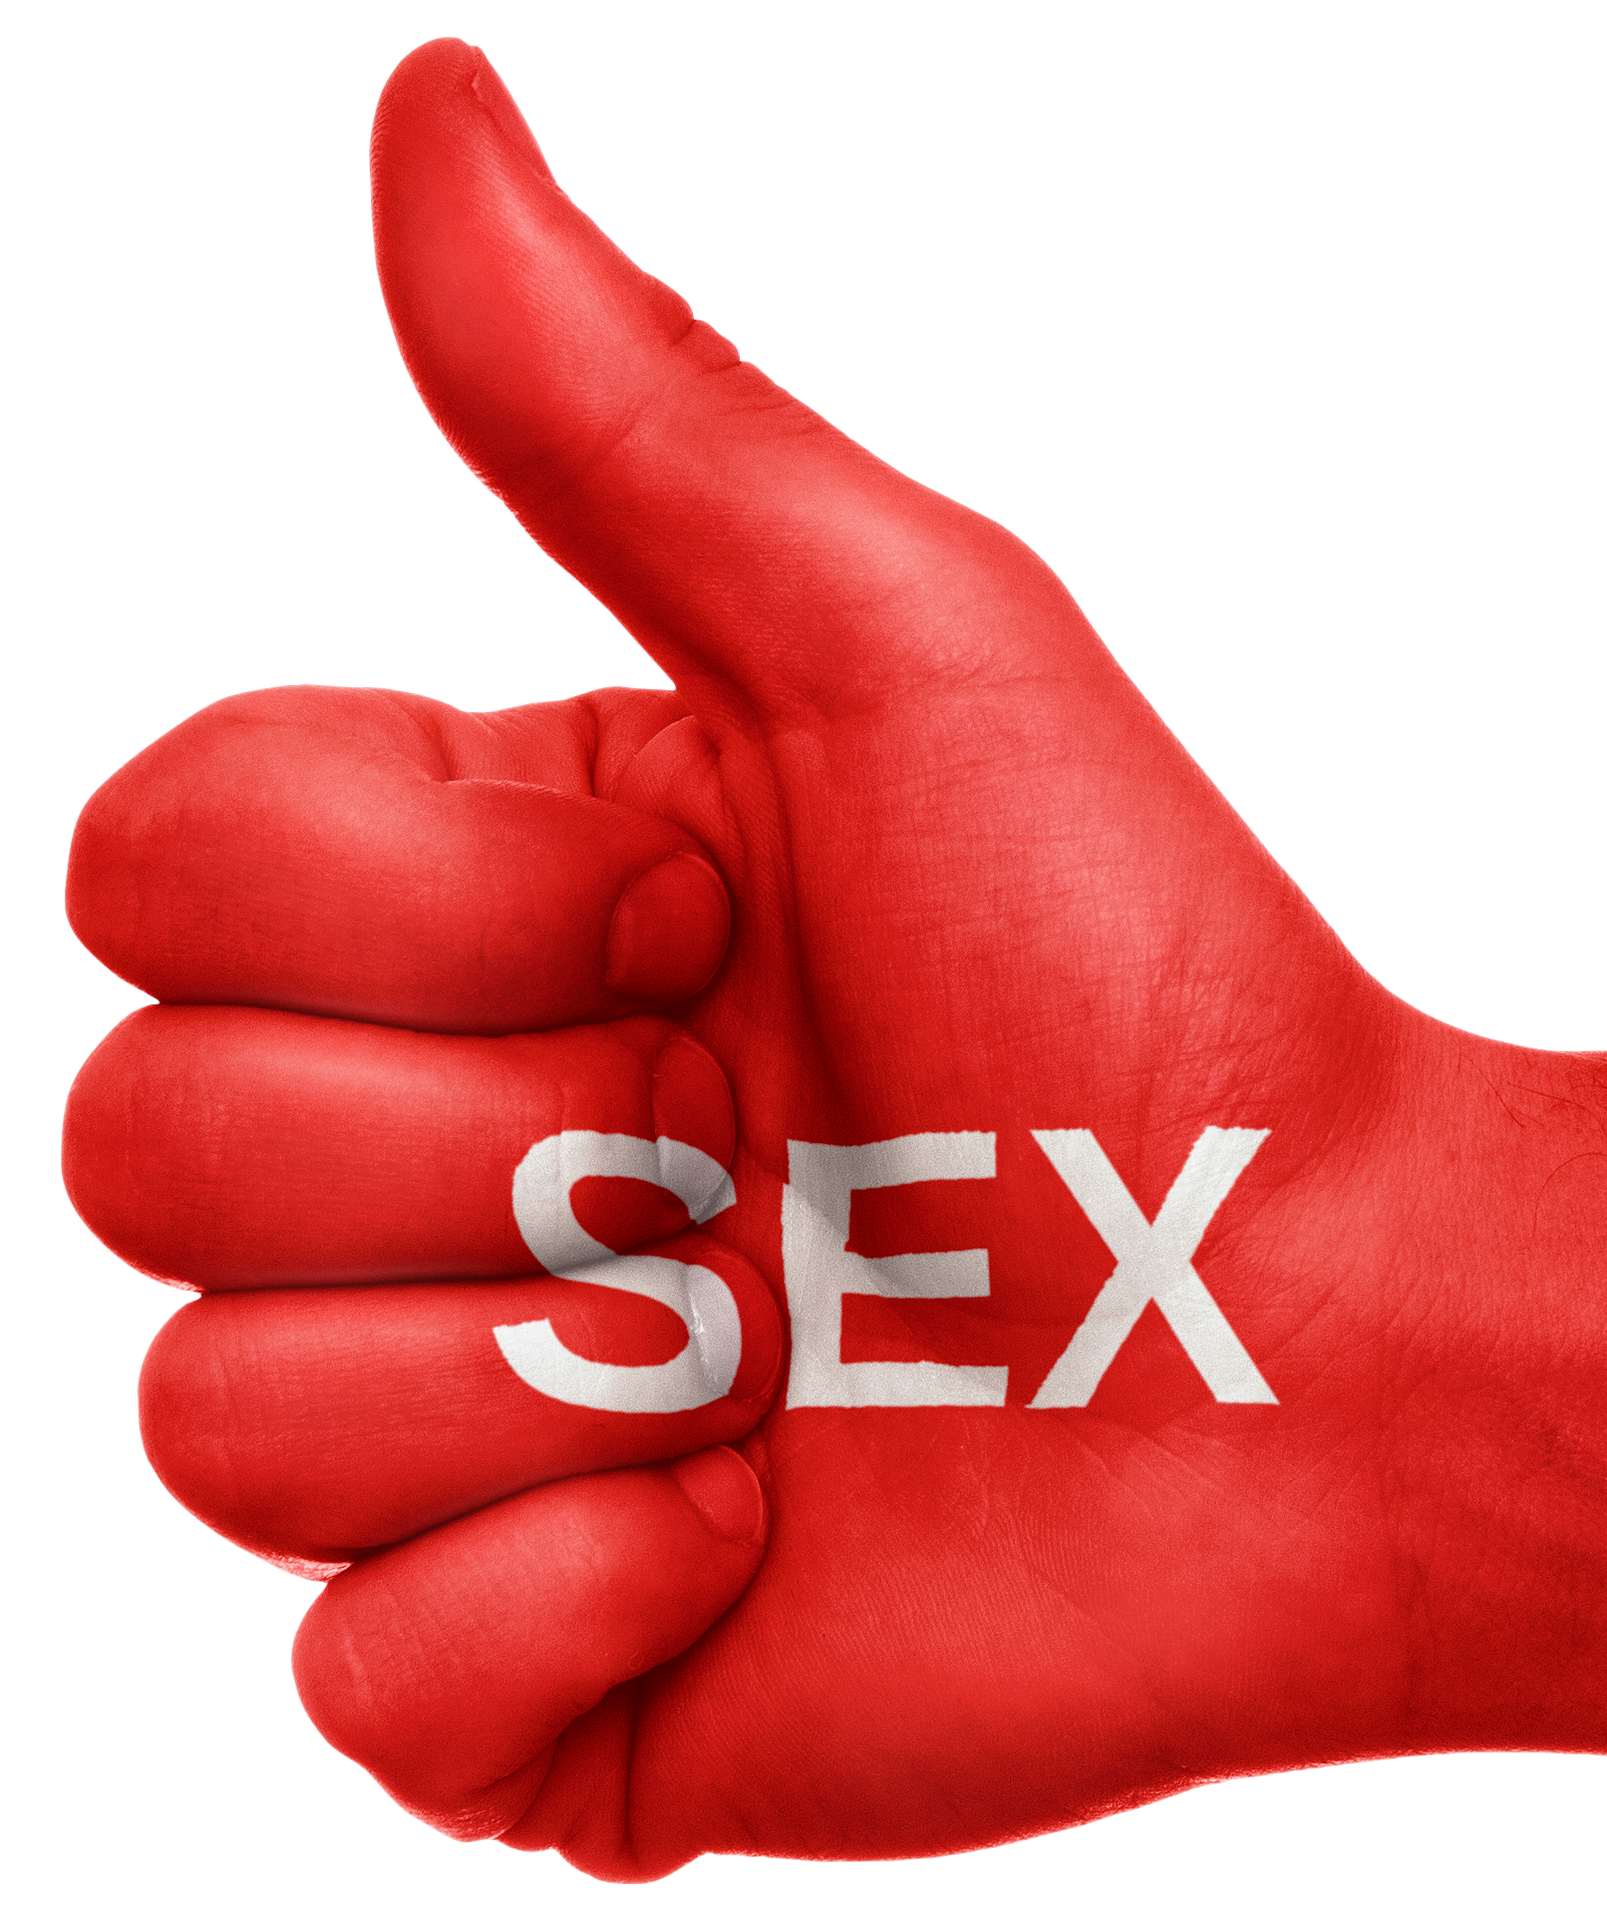  Nam giới mắc chứng nghiện tình dục có thể có nồng độ oxytocin trong máu cao hơn. Ảnh: Pixabay